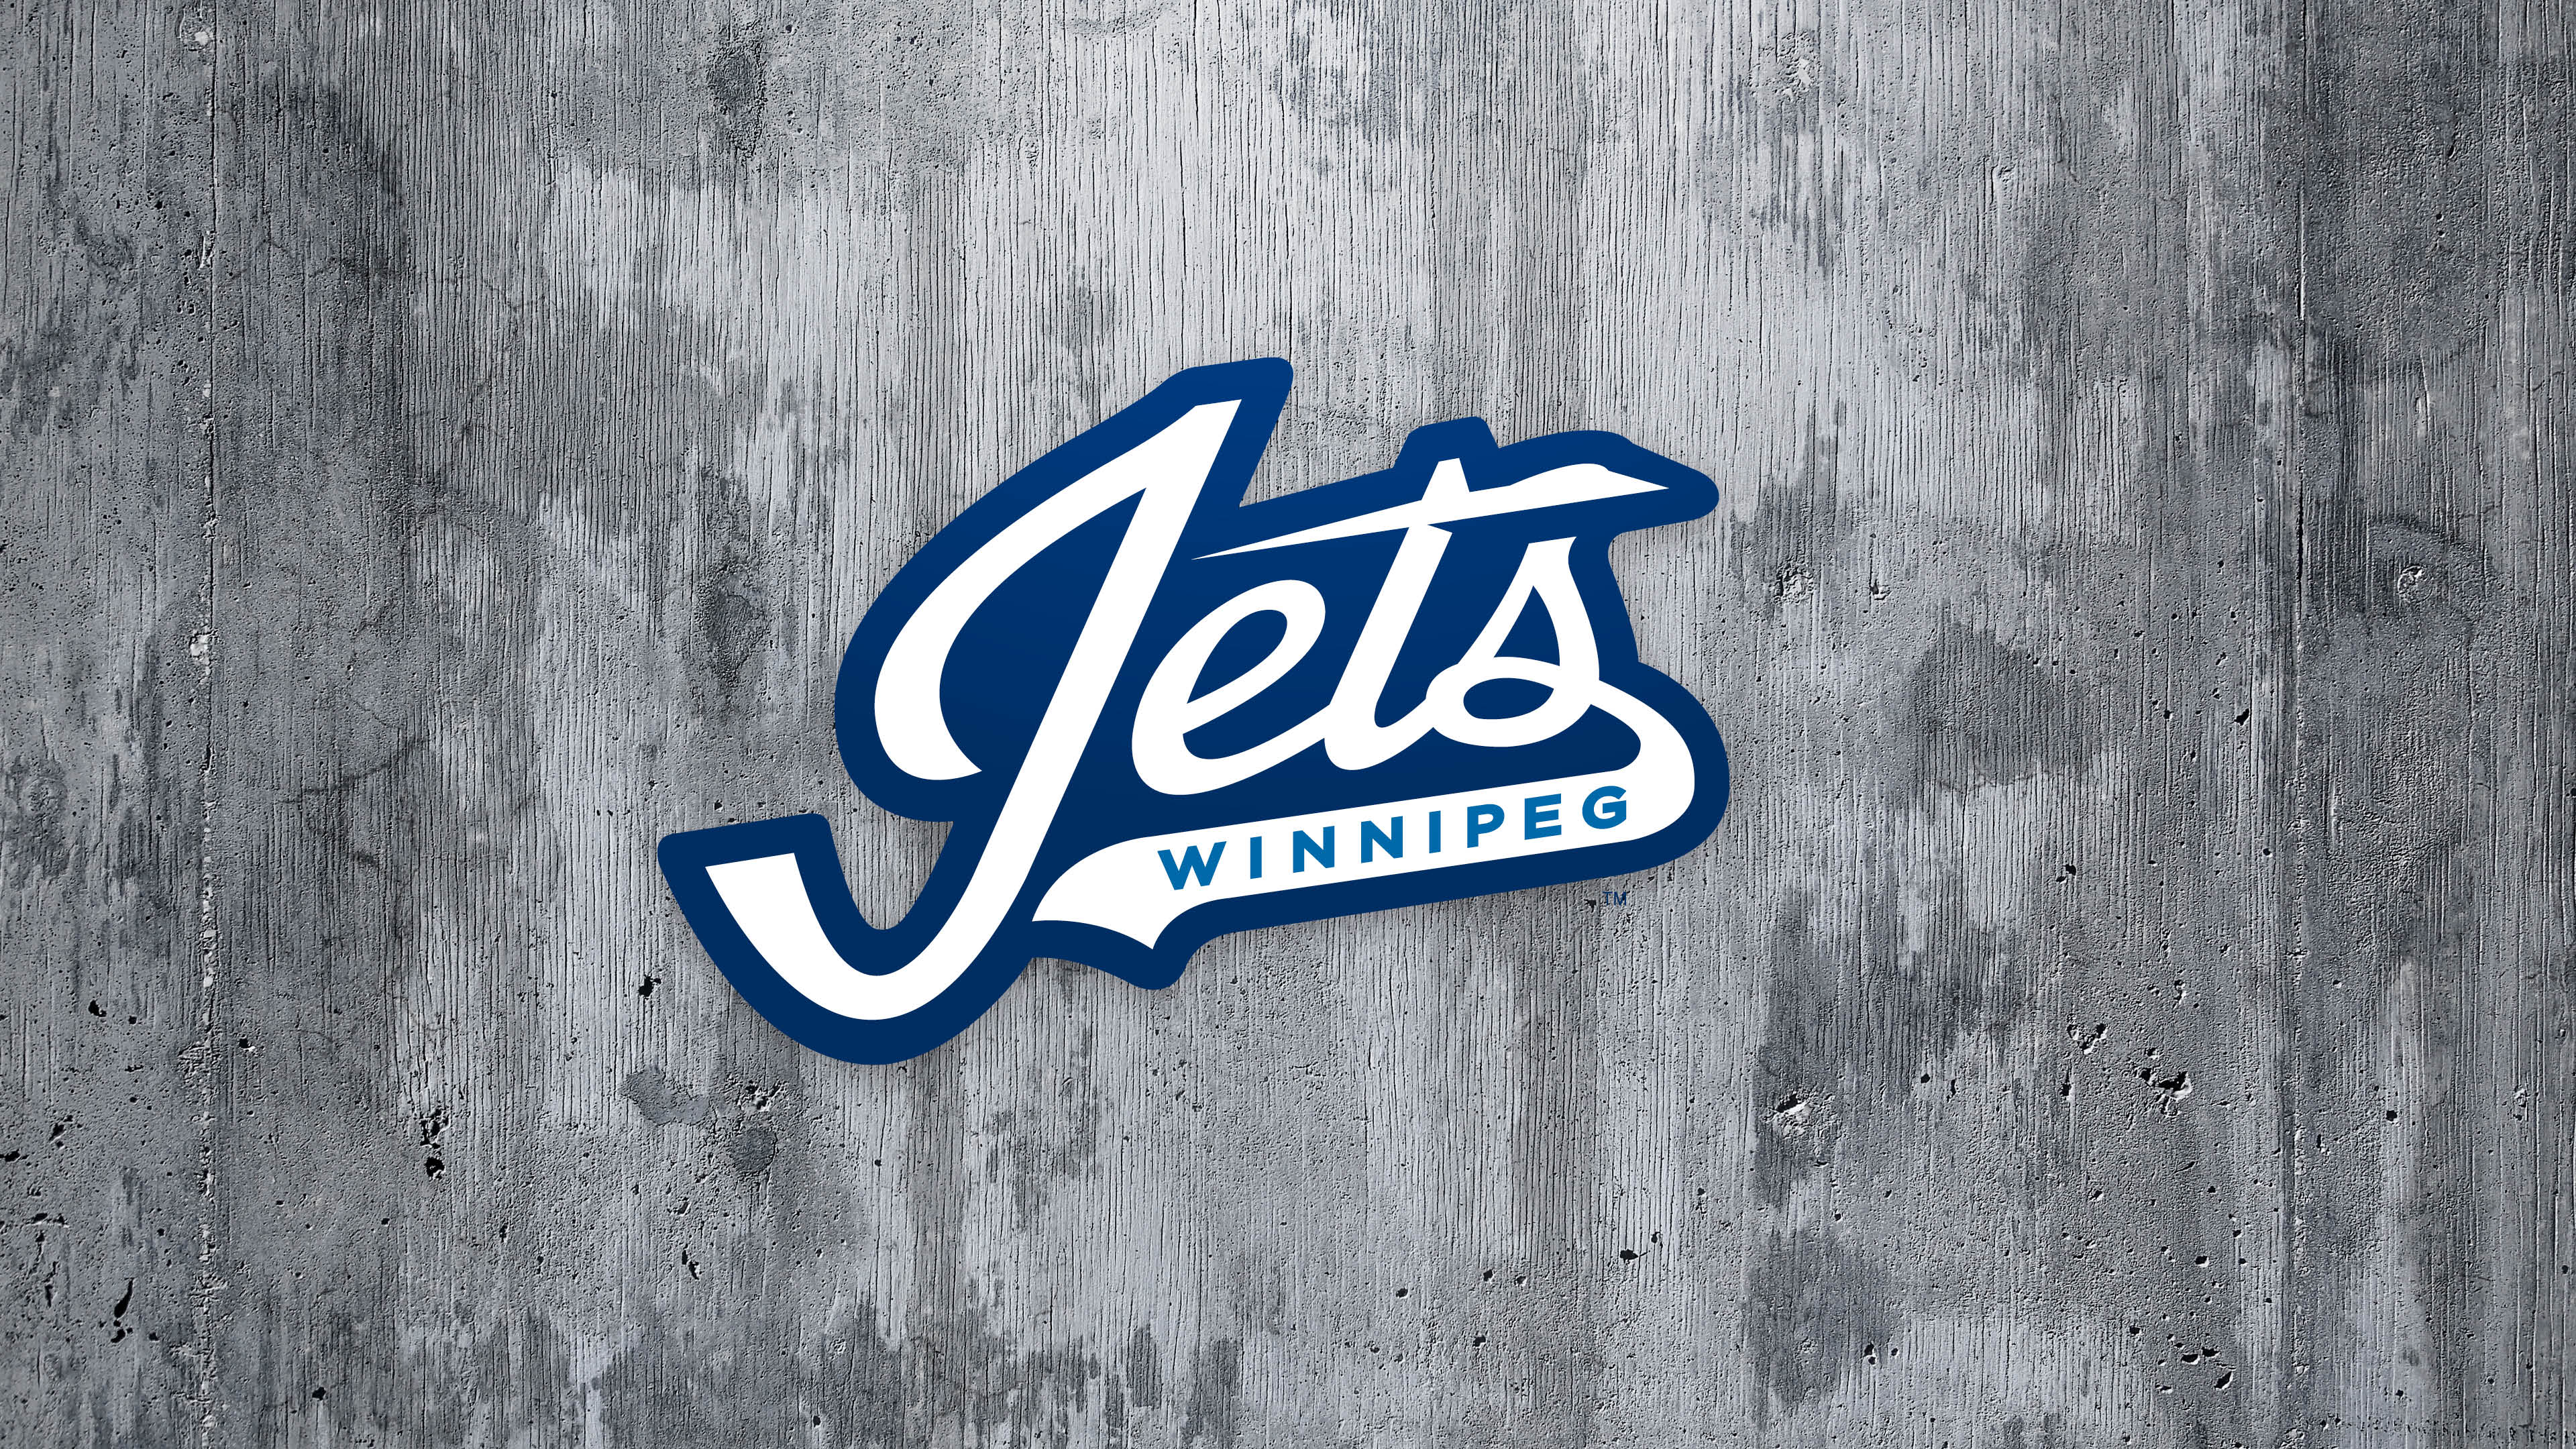 NHL Jets Logo - Desktop & Mobile Wallpapers | Winnipeg Jets